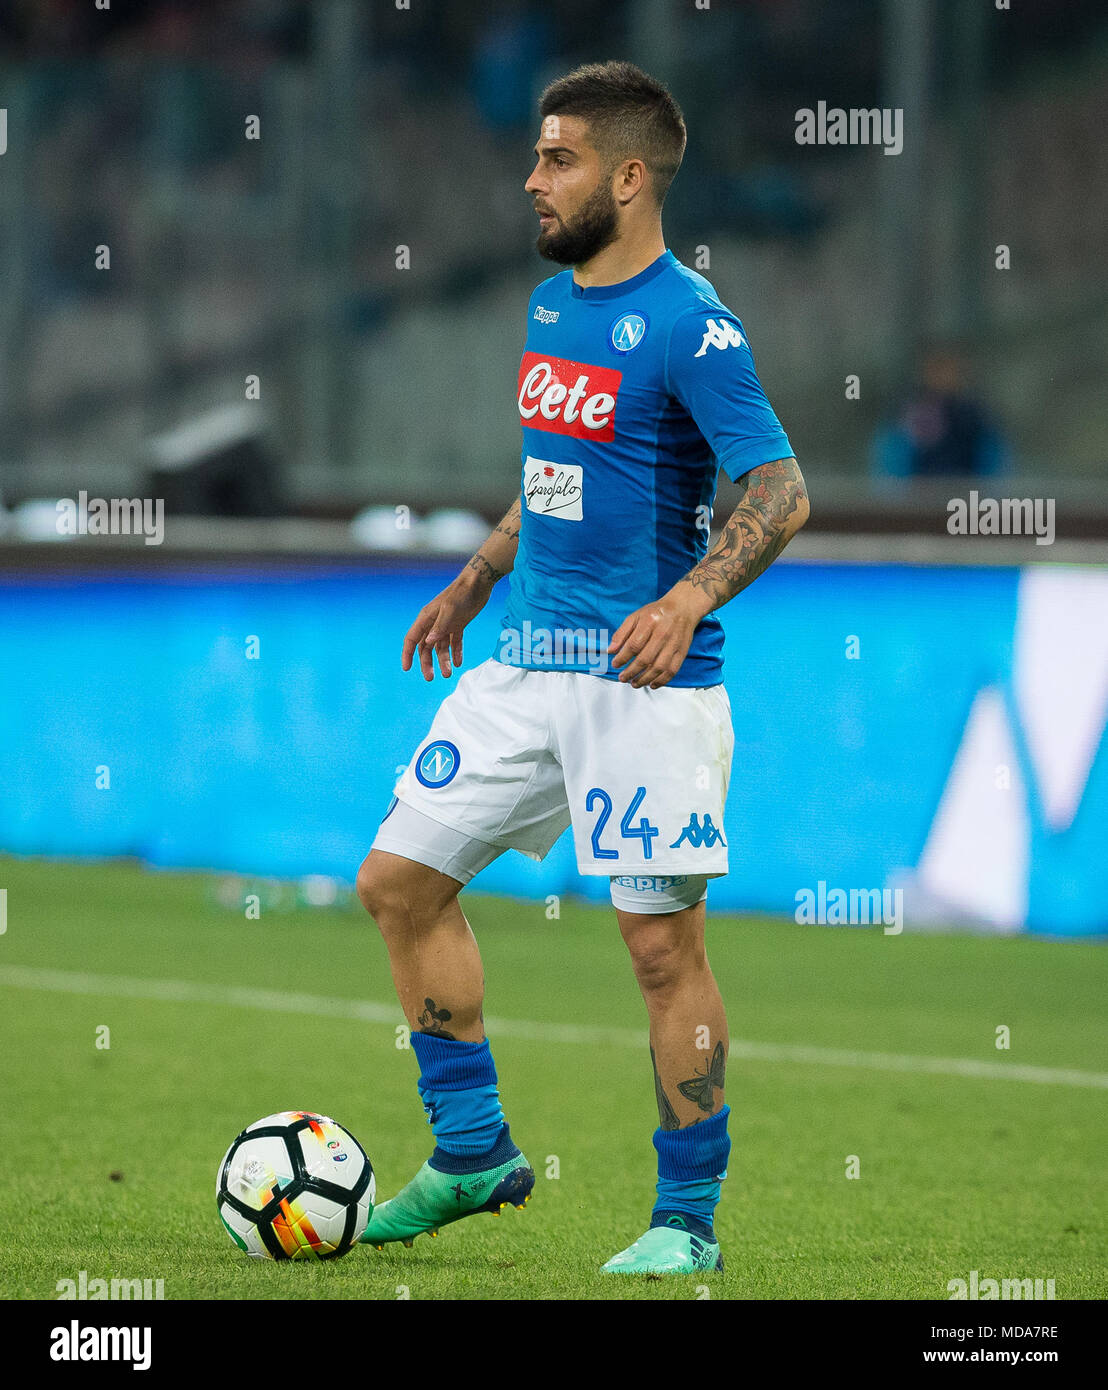 Lorenzo insigne di SSC Napoli in azione durante la serie di una partita di calcio tra SSC Napoli e Udinese Calcio presso lo Stadio San Paolo. Foto Stock